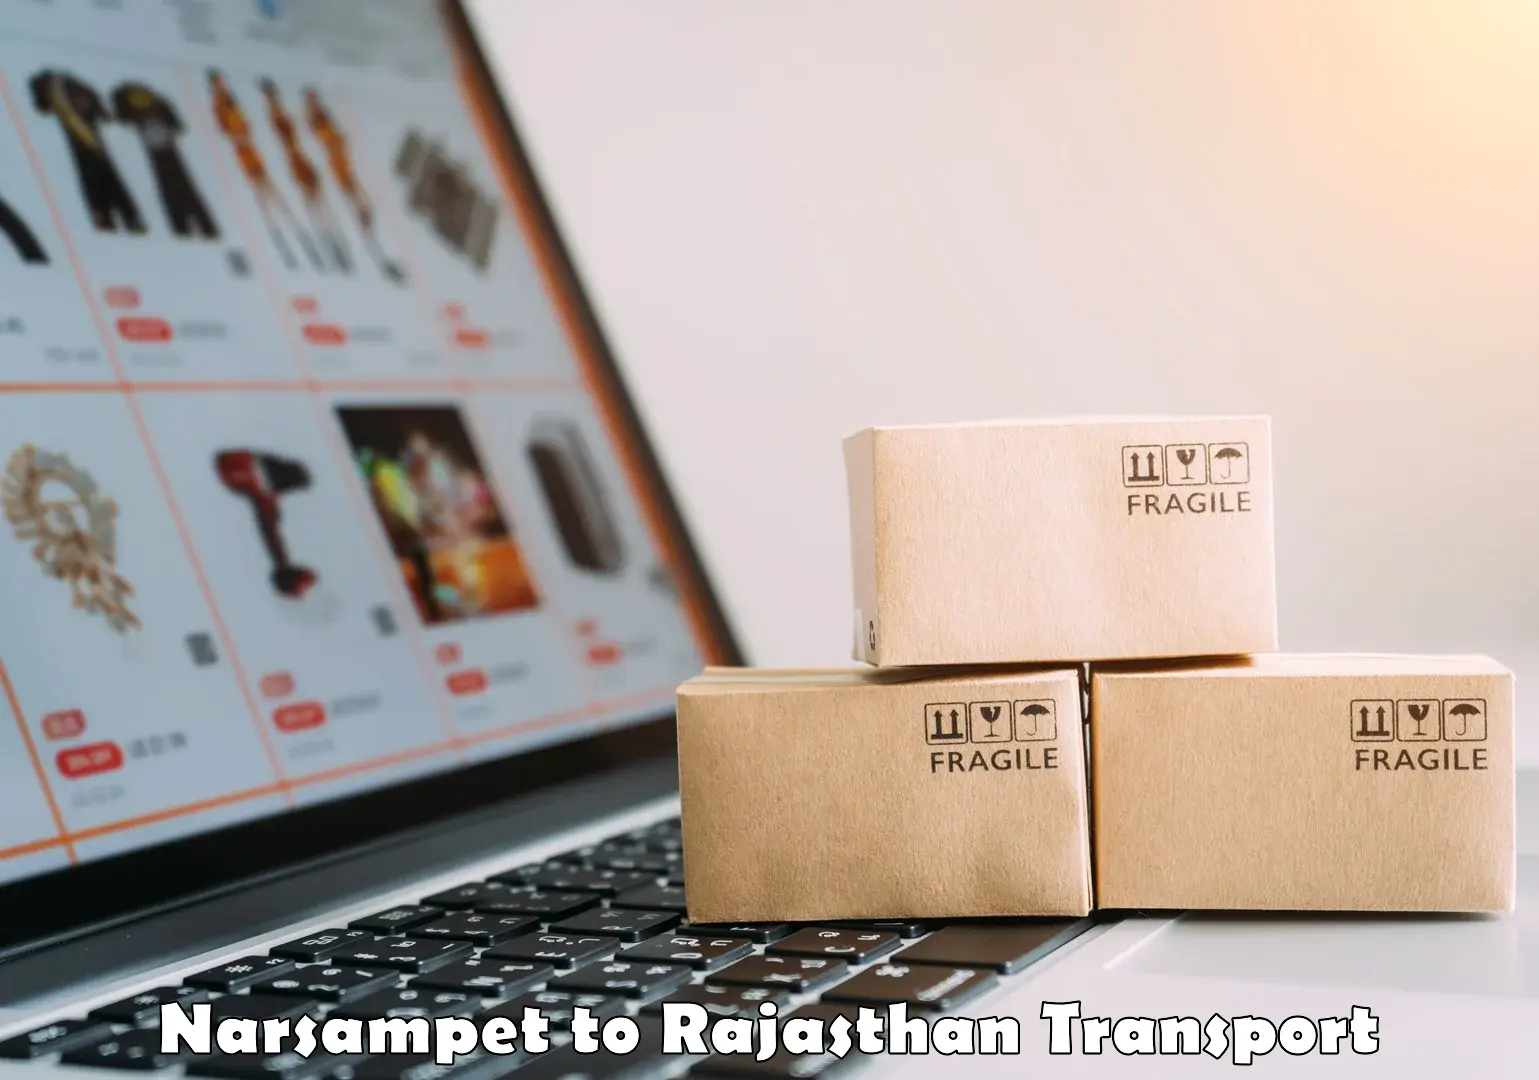 Furniture transport service Narsampet to Rajasthan